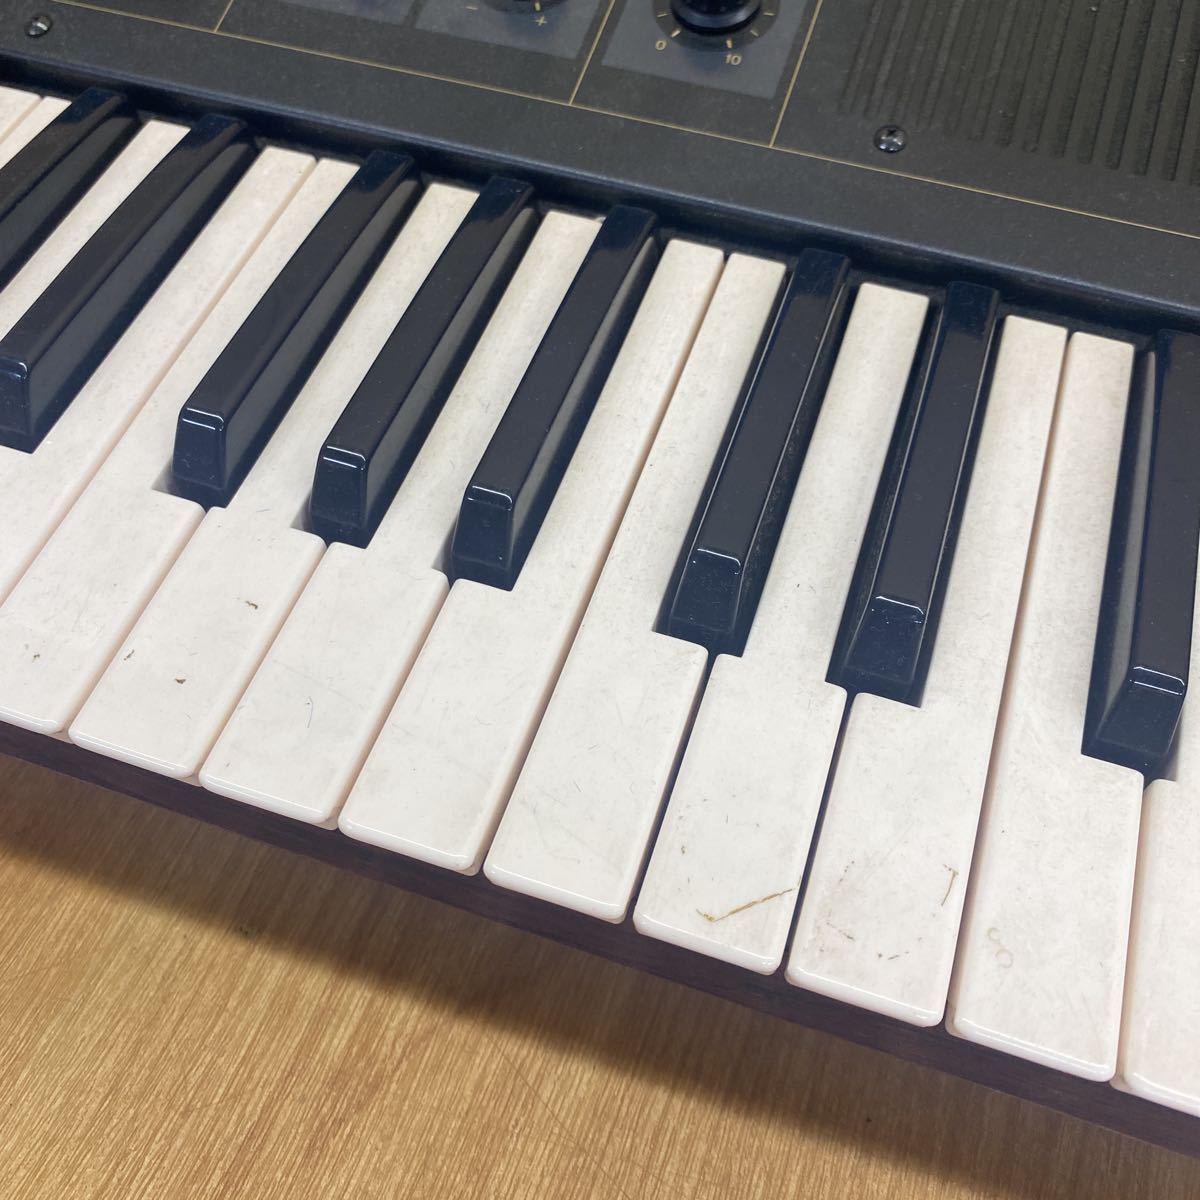  б/у товар bYAMAHA Yamaha CP11 электронное пианино электрический фортепьяно клавиатура 61 клавиатура жесткий чехол имеется синтезатор фортепьяно 